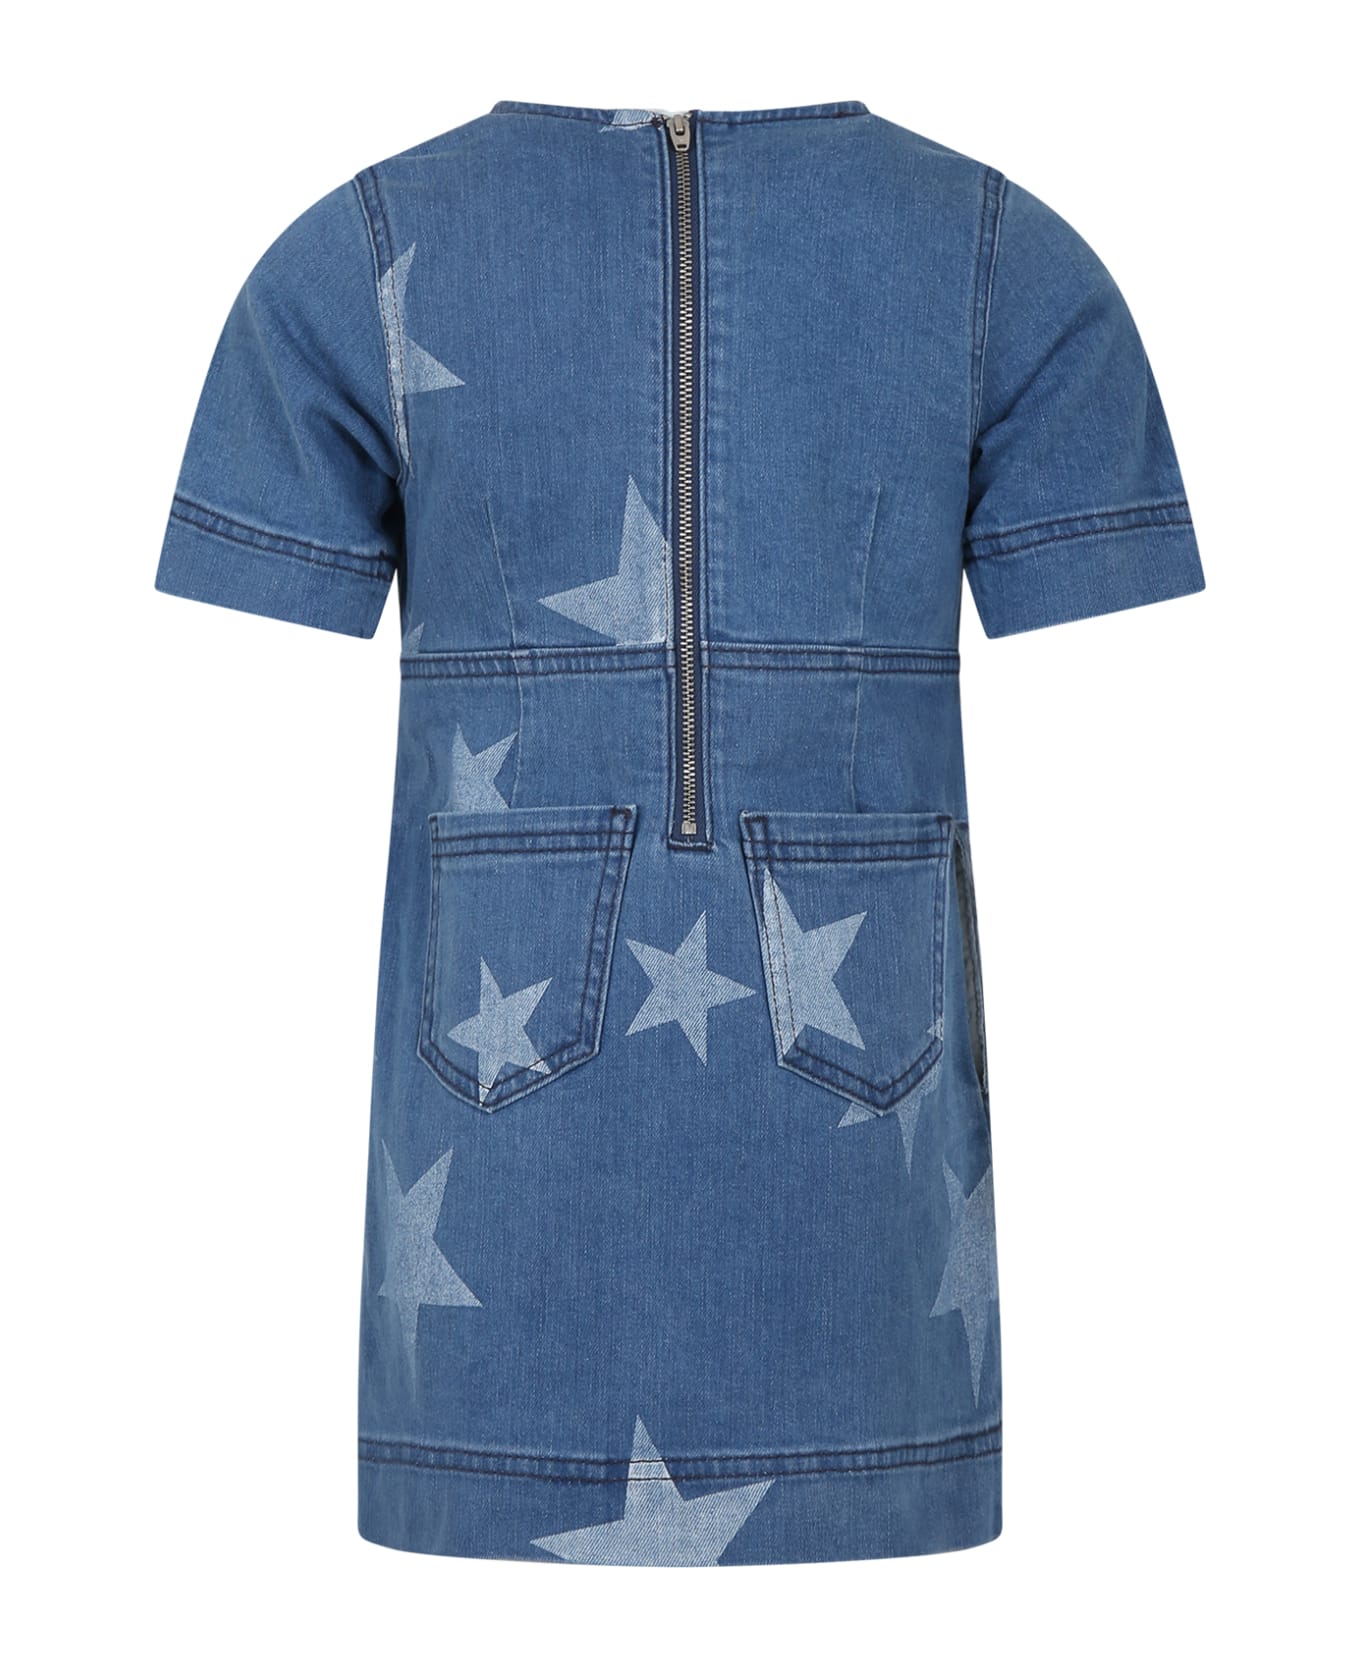 Stella McCartney Kids Blue Dress For Girl With Stars - Denim